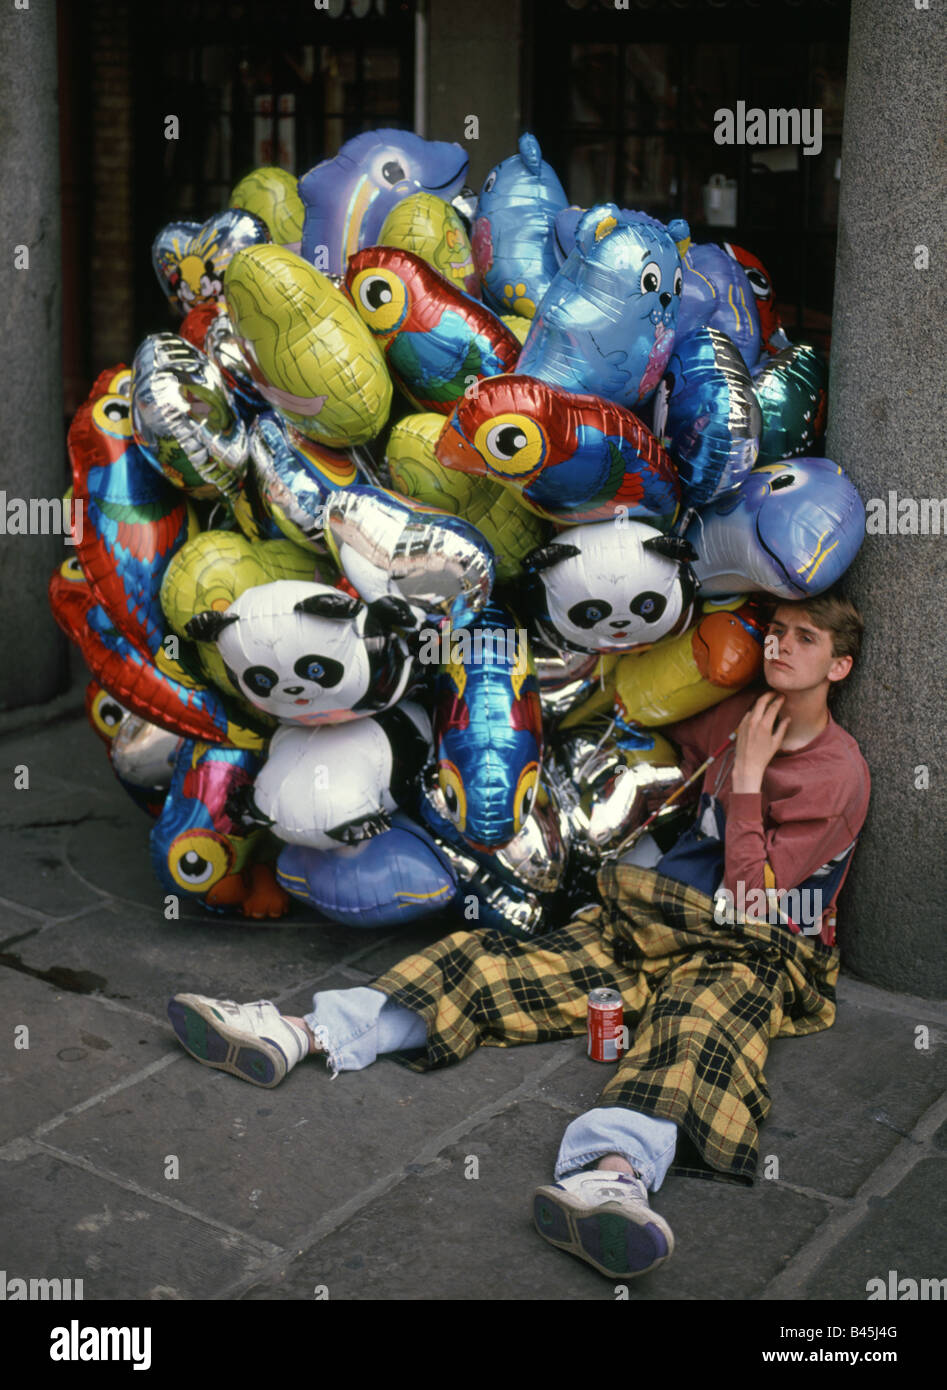 Covent Garden London balloon seller takes a break Stock Photo